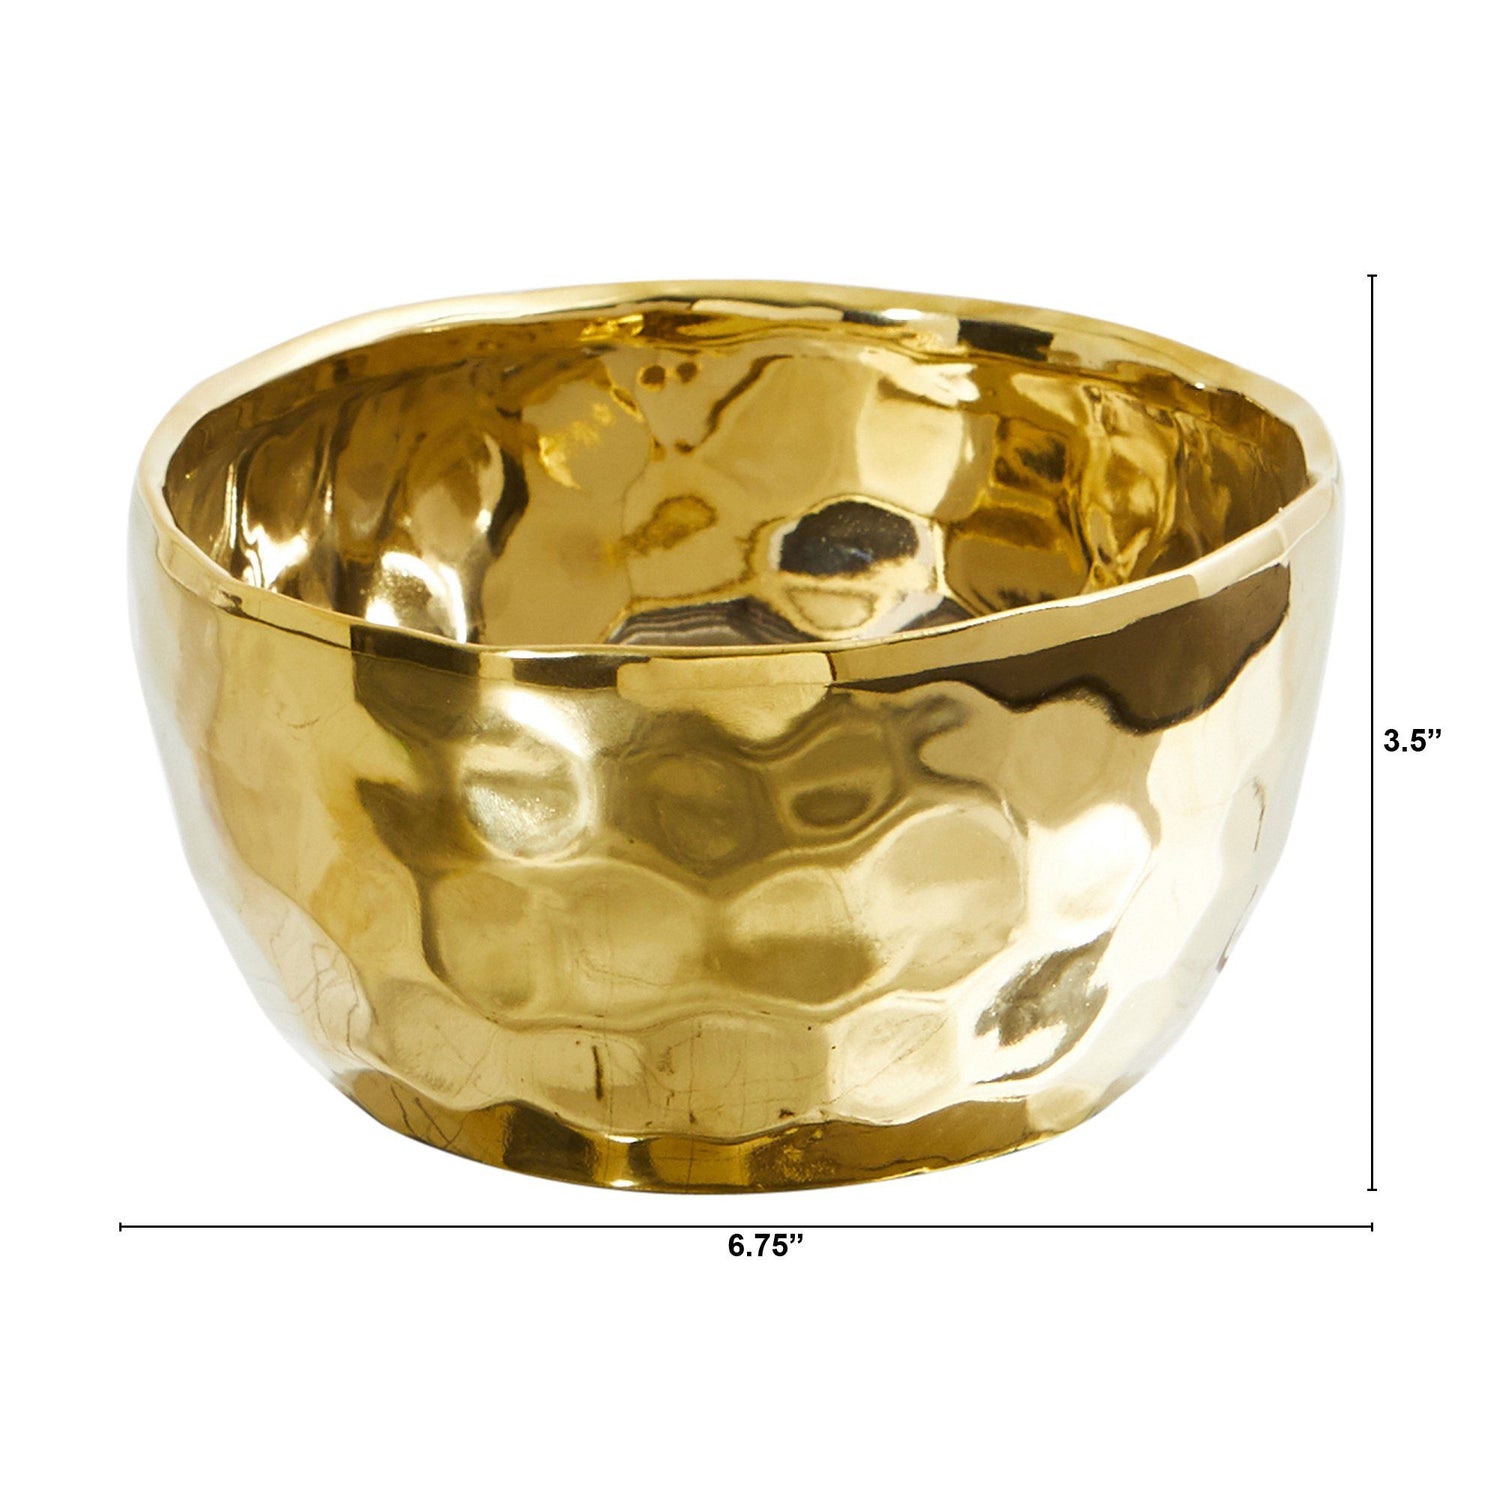 6.75” Designer Gold Bowl